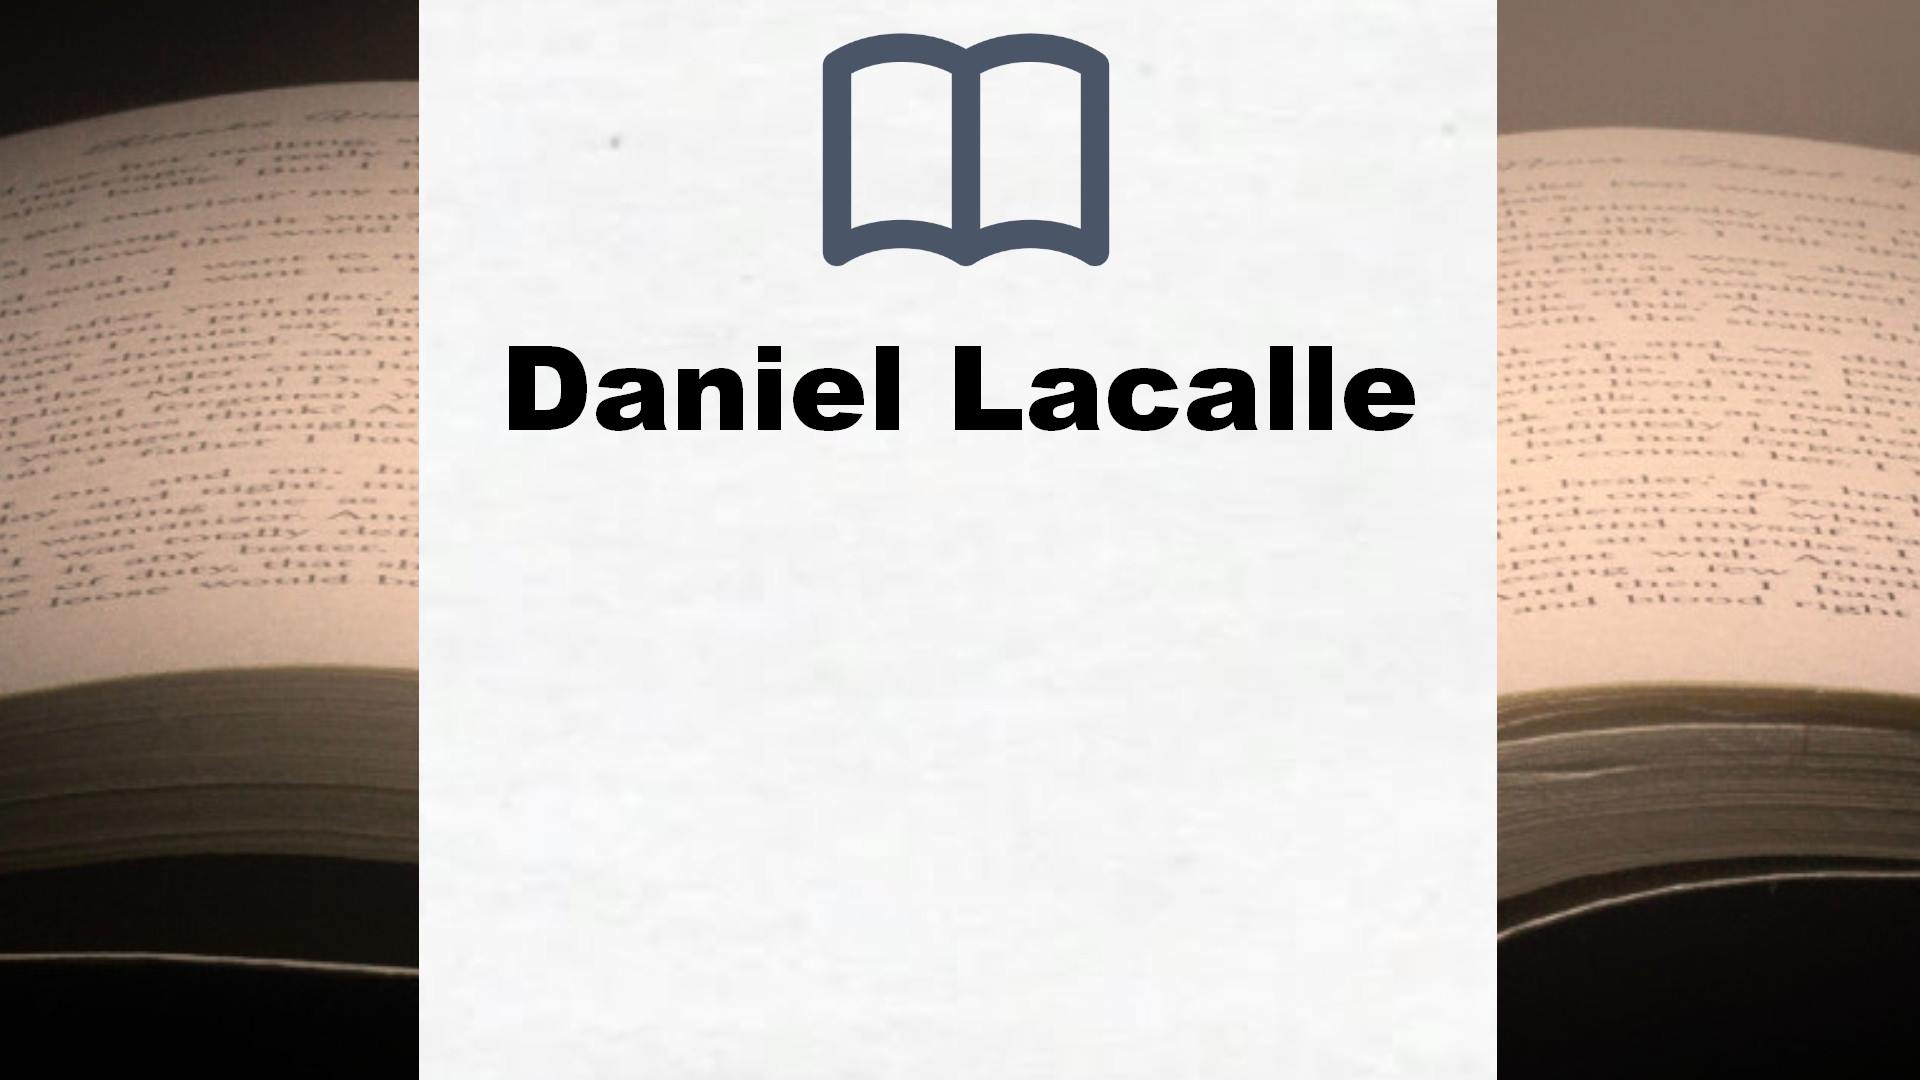 Libros Daniel Lacalle